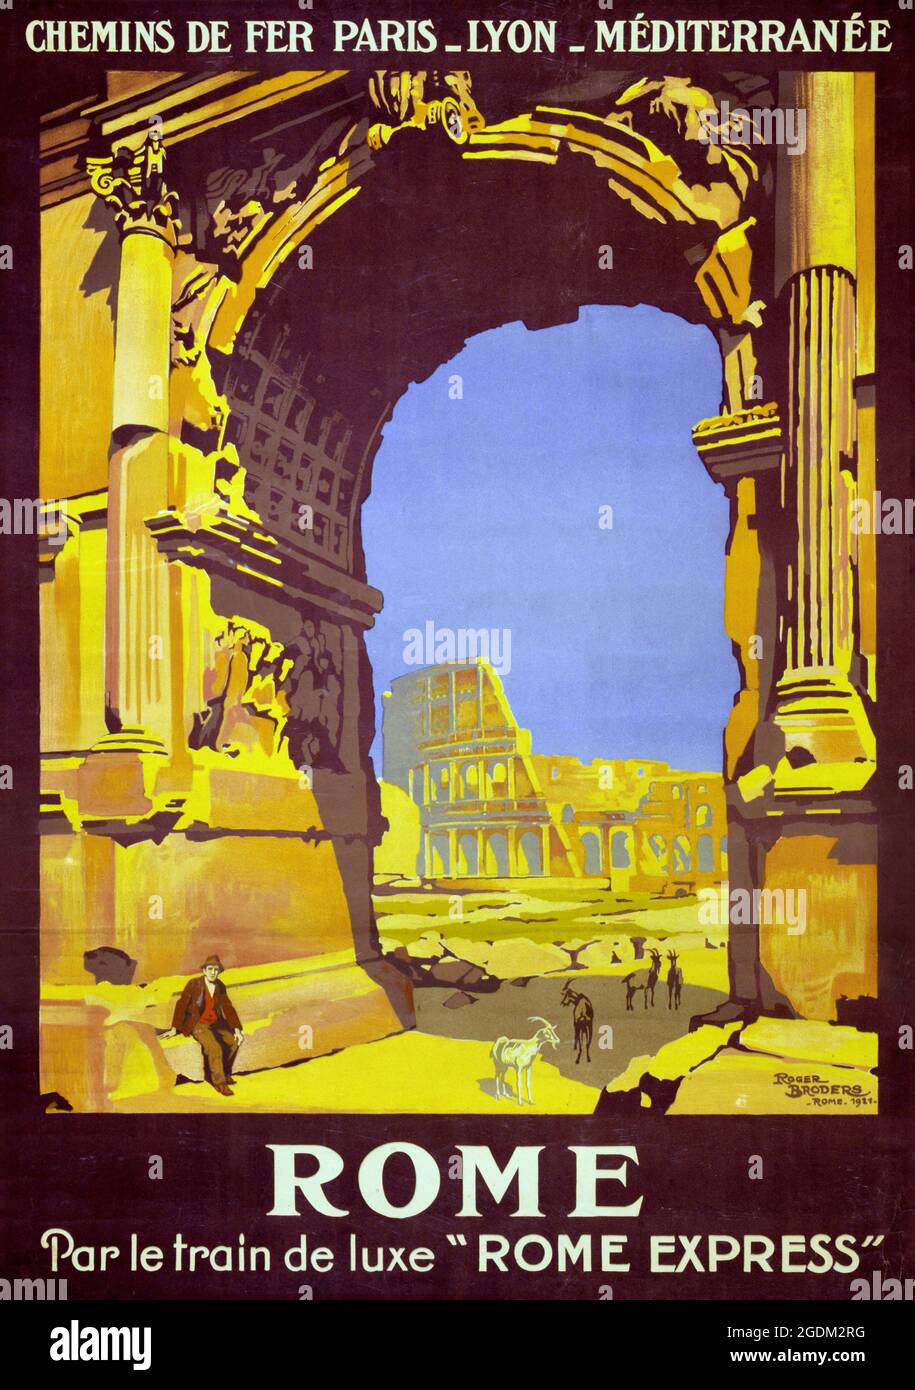 Roma. Par le train deluxe "Rome Express" di Roger Broders (1883-1953). Poster d'epoca restaurato pubblicato nel 1921 in Italia. Foto Stock